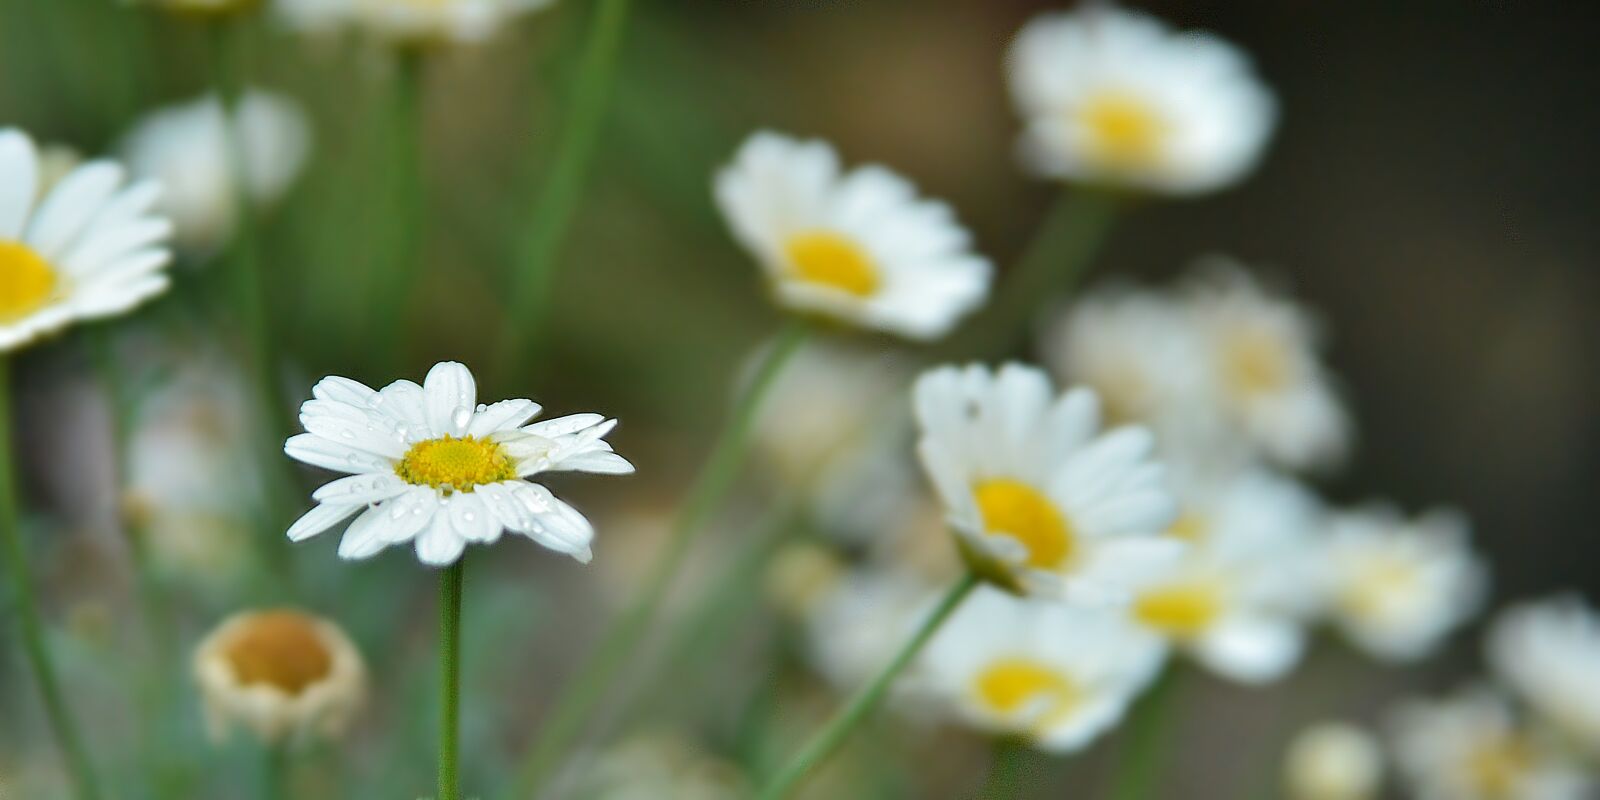 Nikon D610 sample photo. Leucanthemum, bellis perennis, flower photography